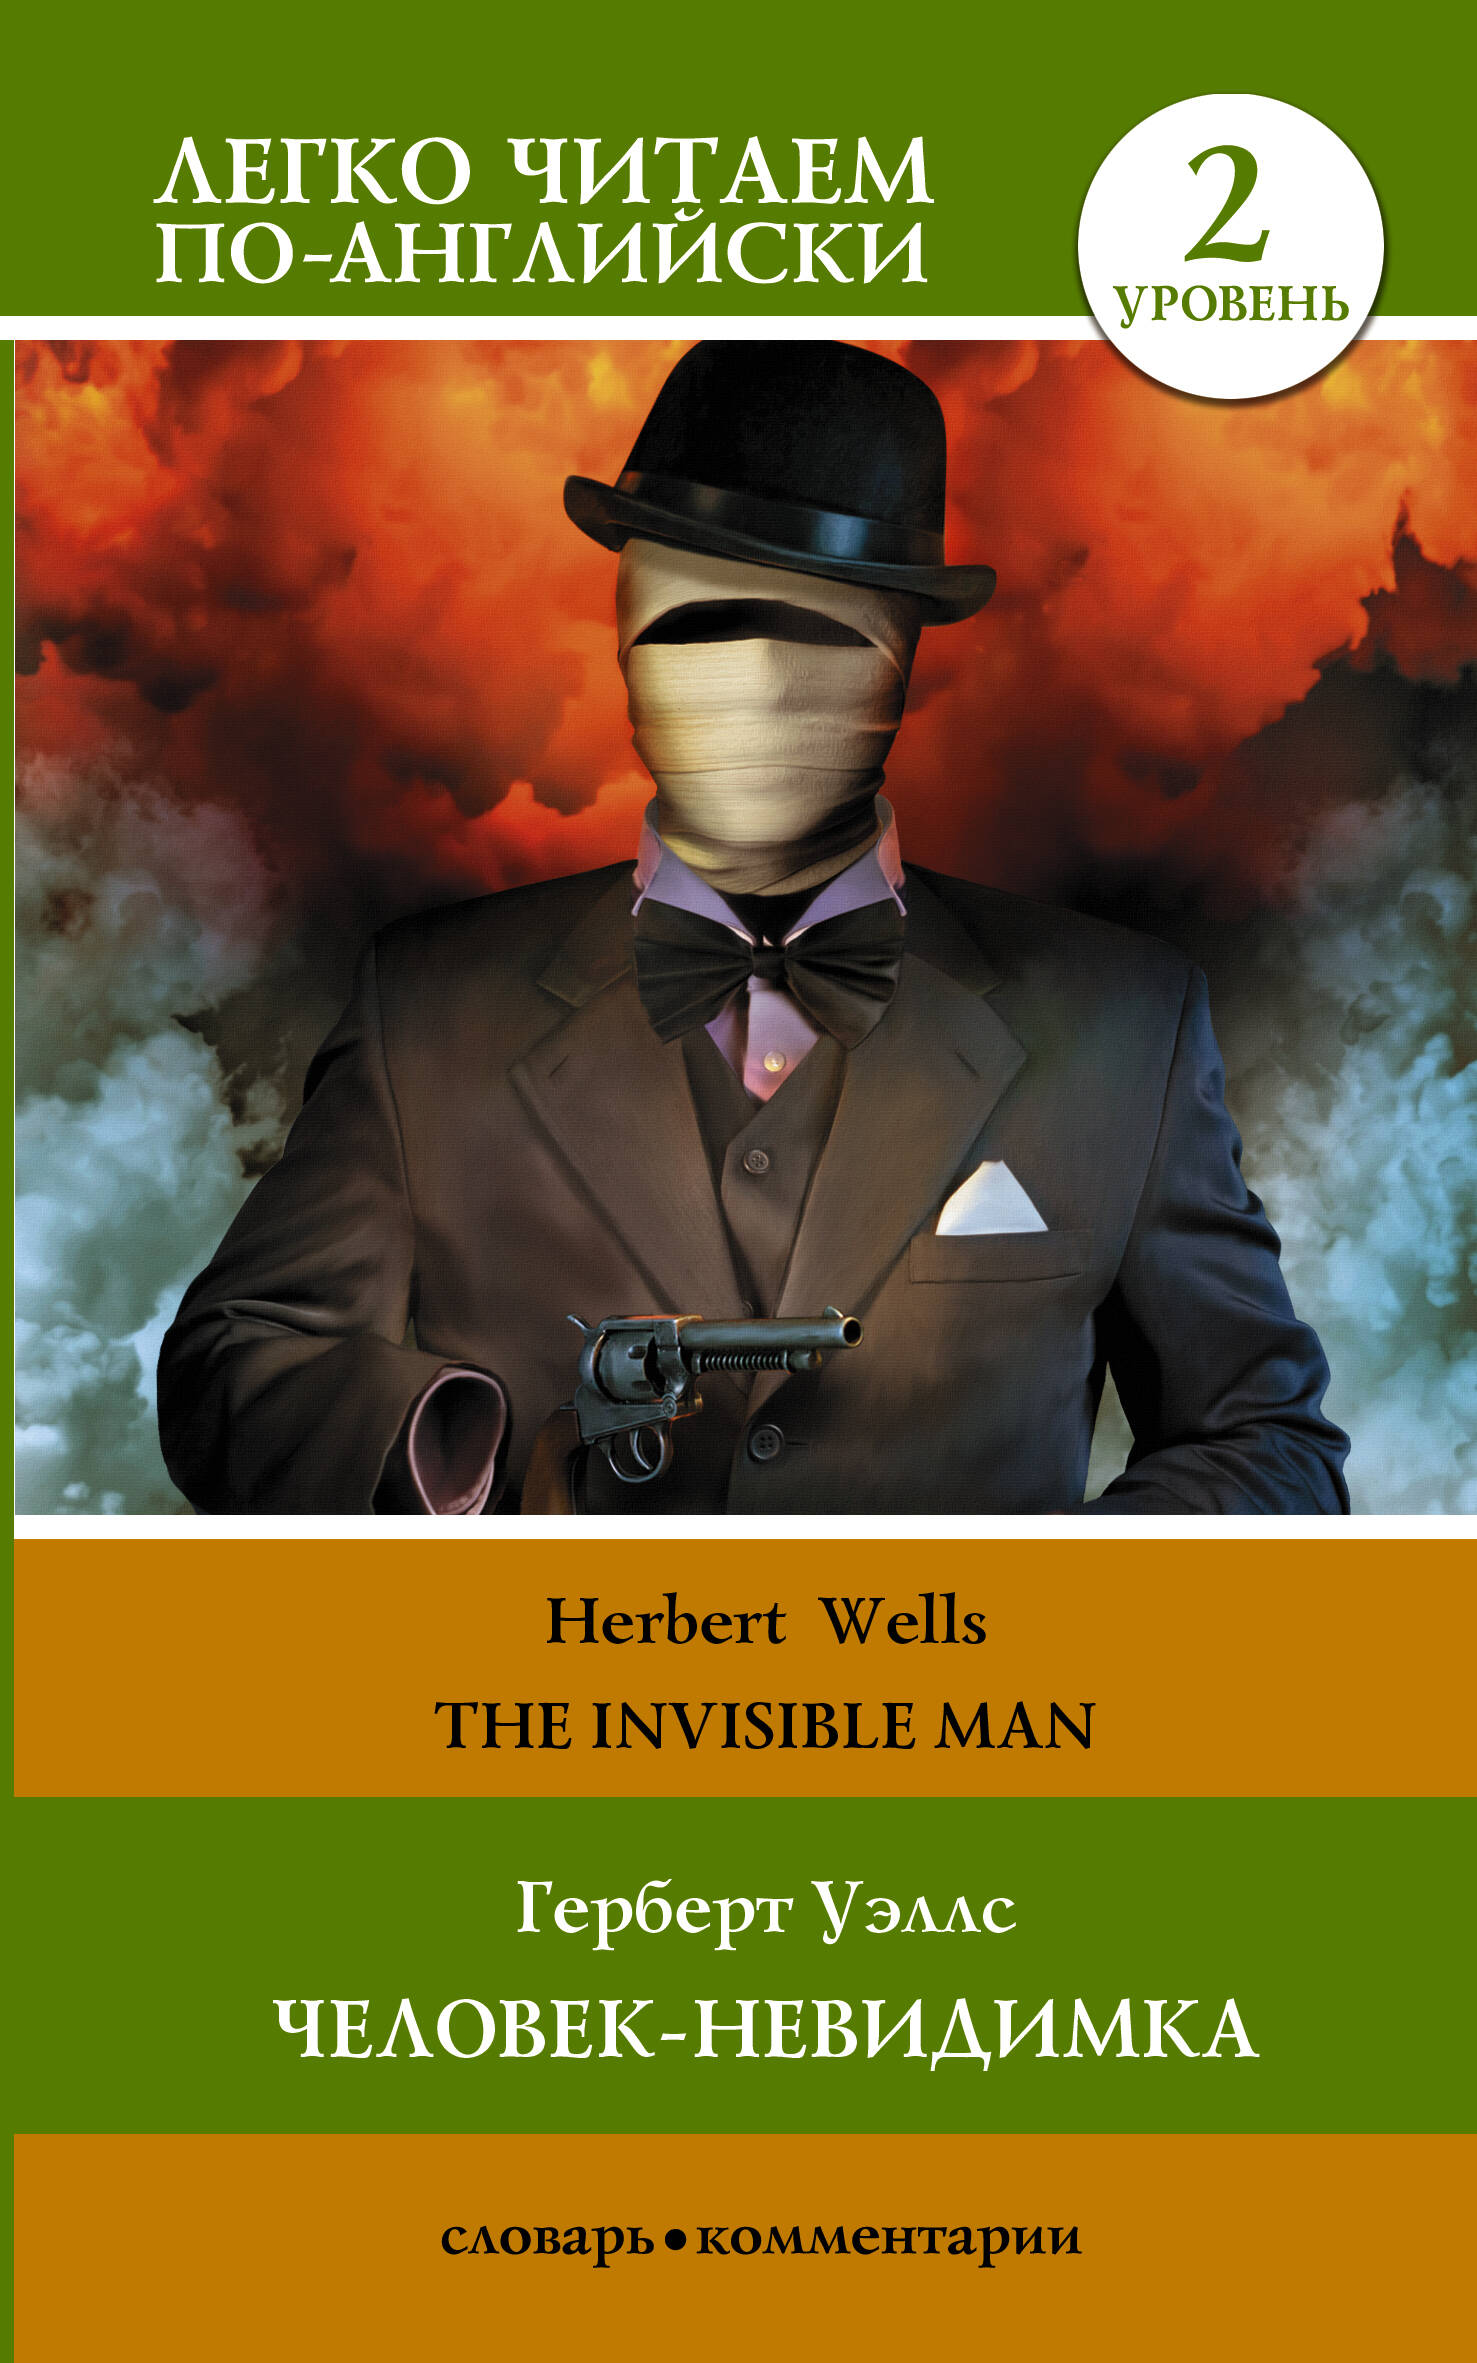 Герберт Уэллс. Человек-невидимка = H.G. Wells. The Invisible Man. Уровень 2